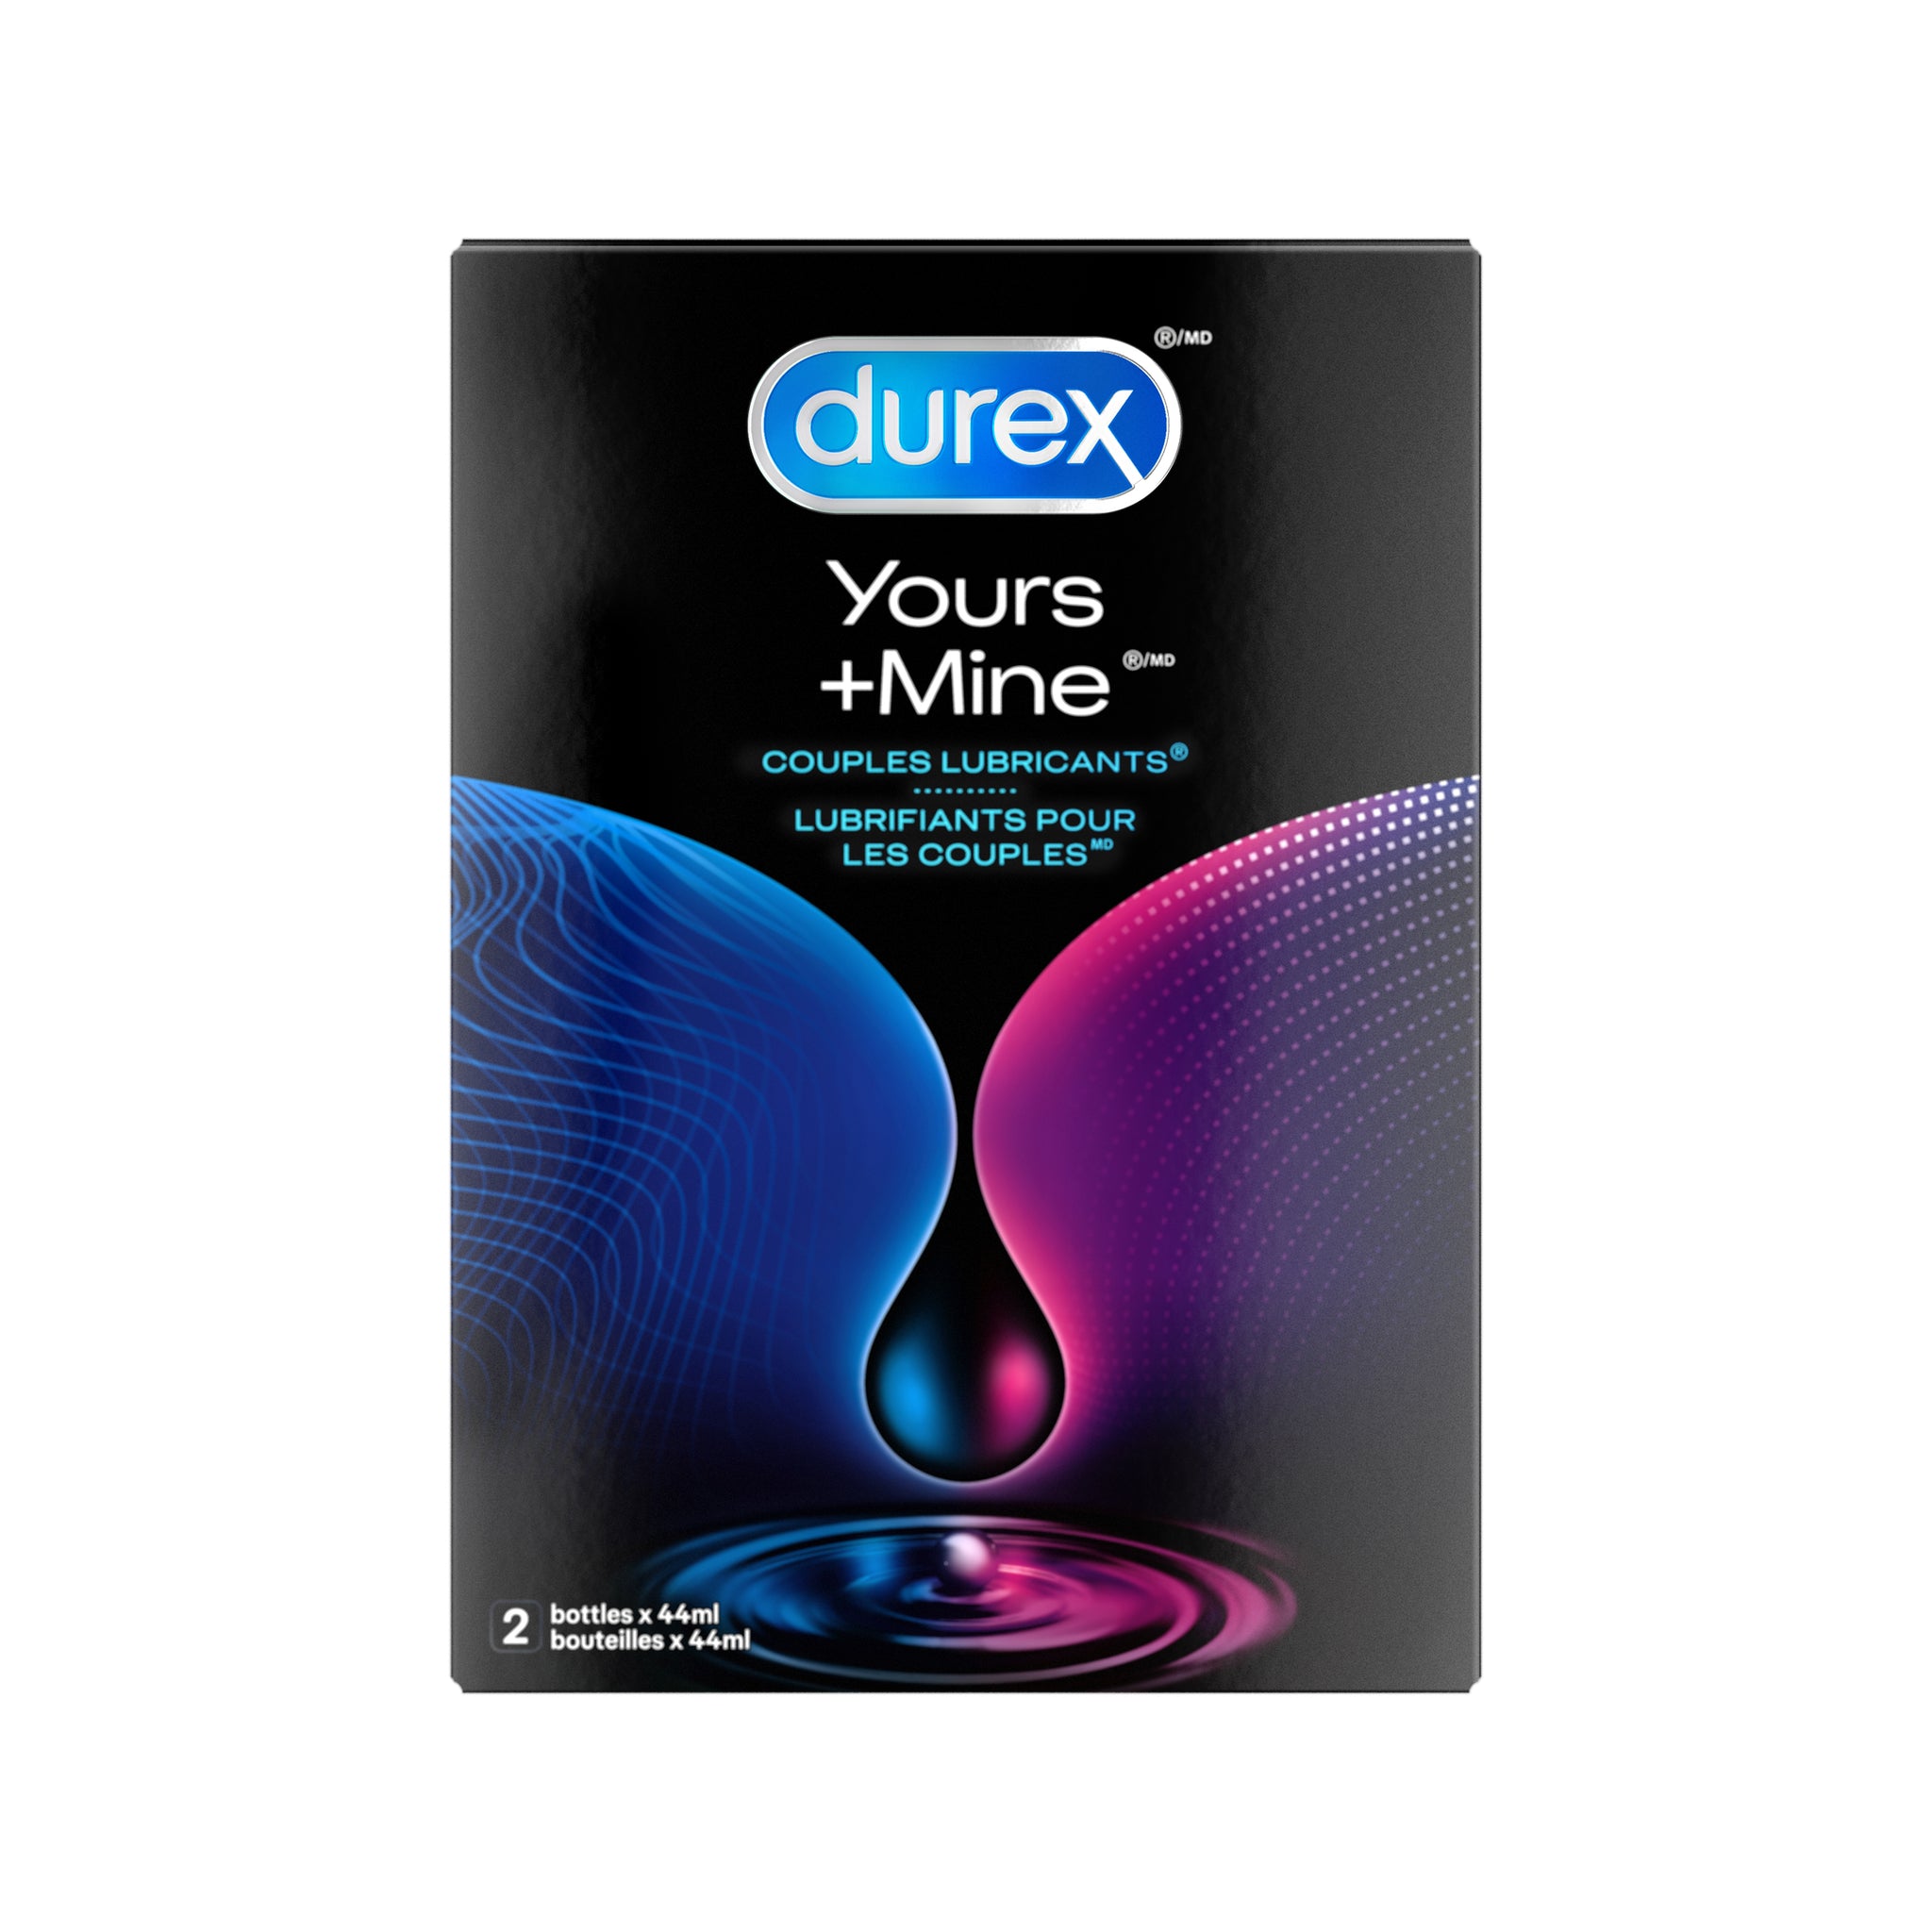 packshot of Lubrifiant pour couples Durex Yours + Mine dans son emballage.